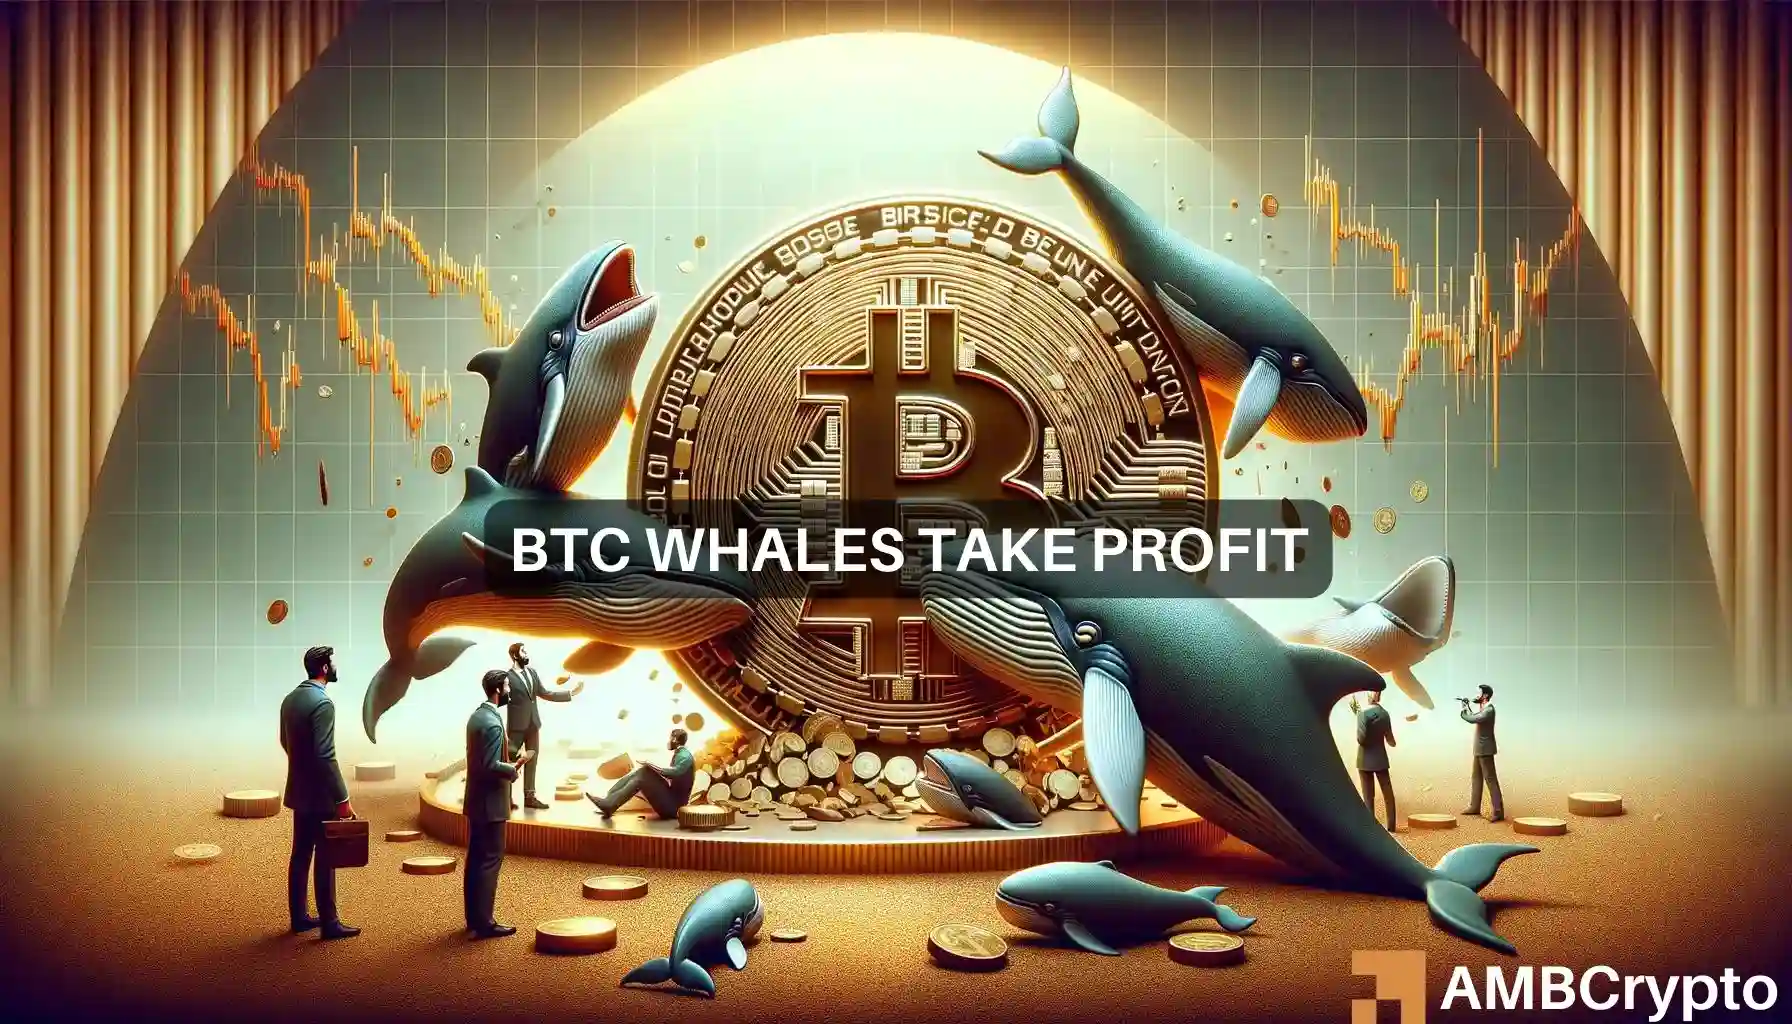 Bitcoin whales take profit